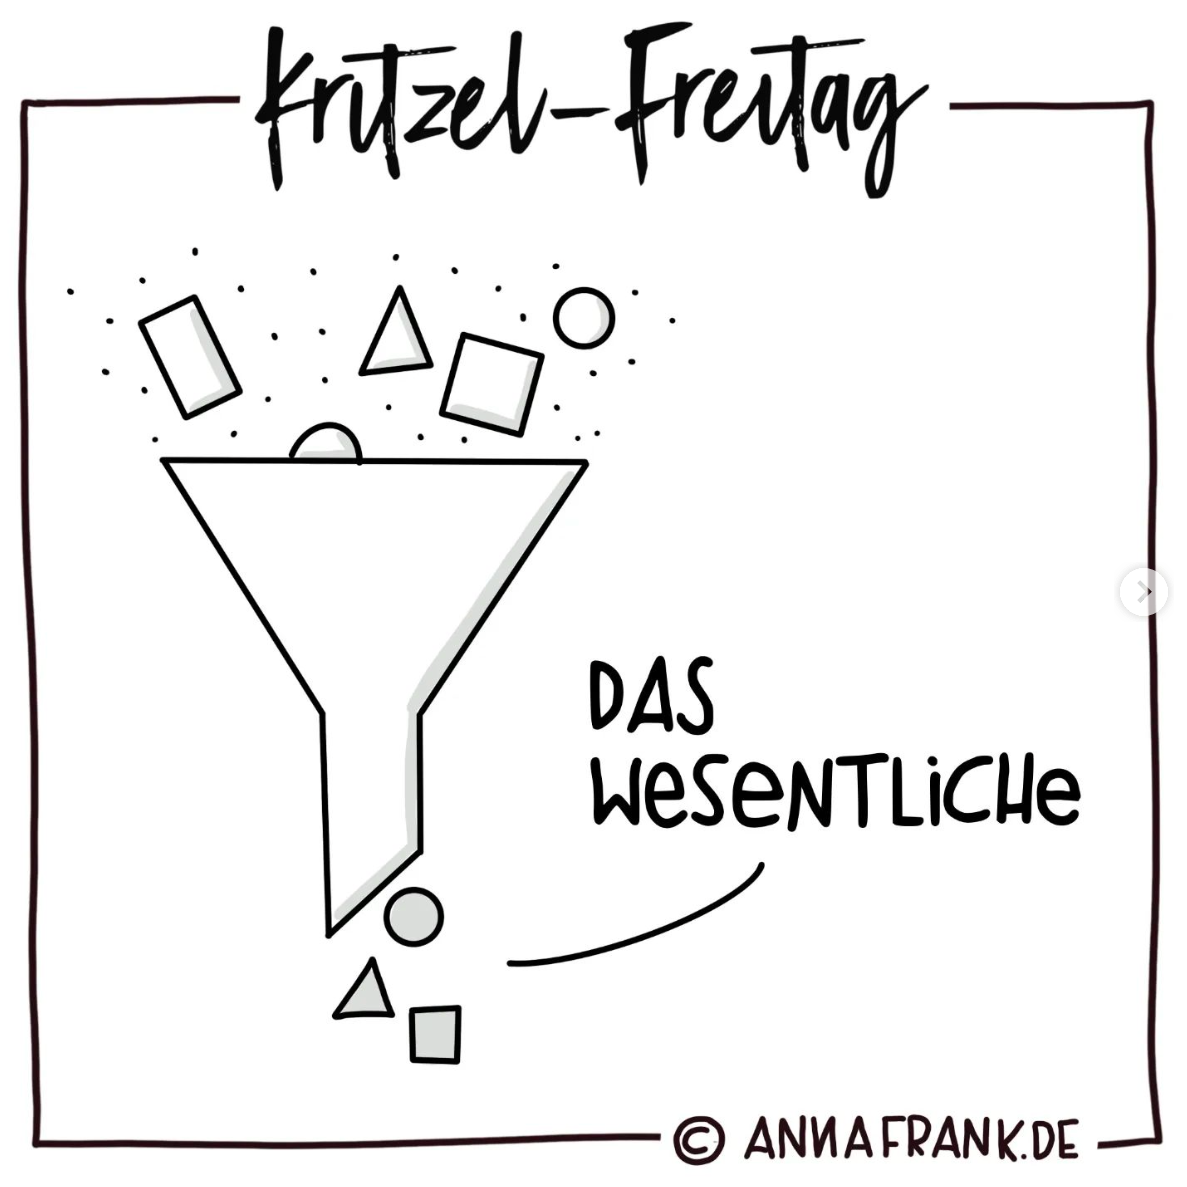 Anna Frank von Sketchnote Journal nimmt dich mit auf den Kritzel-Freitag